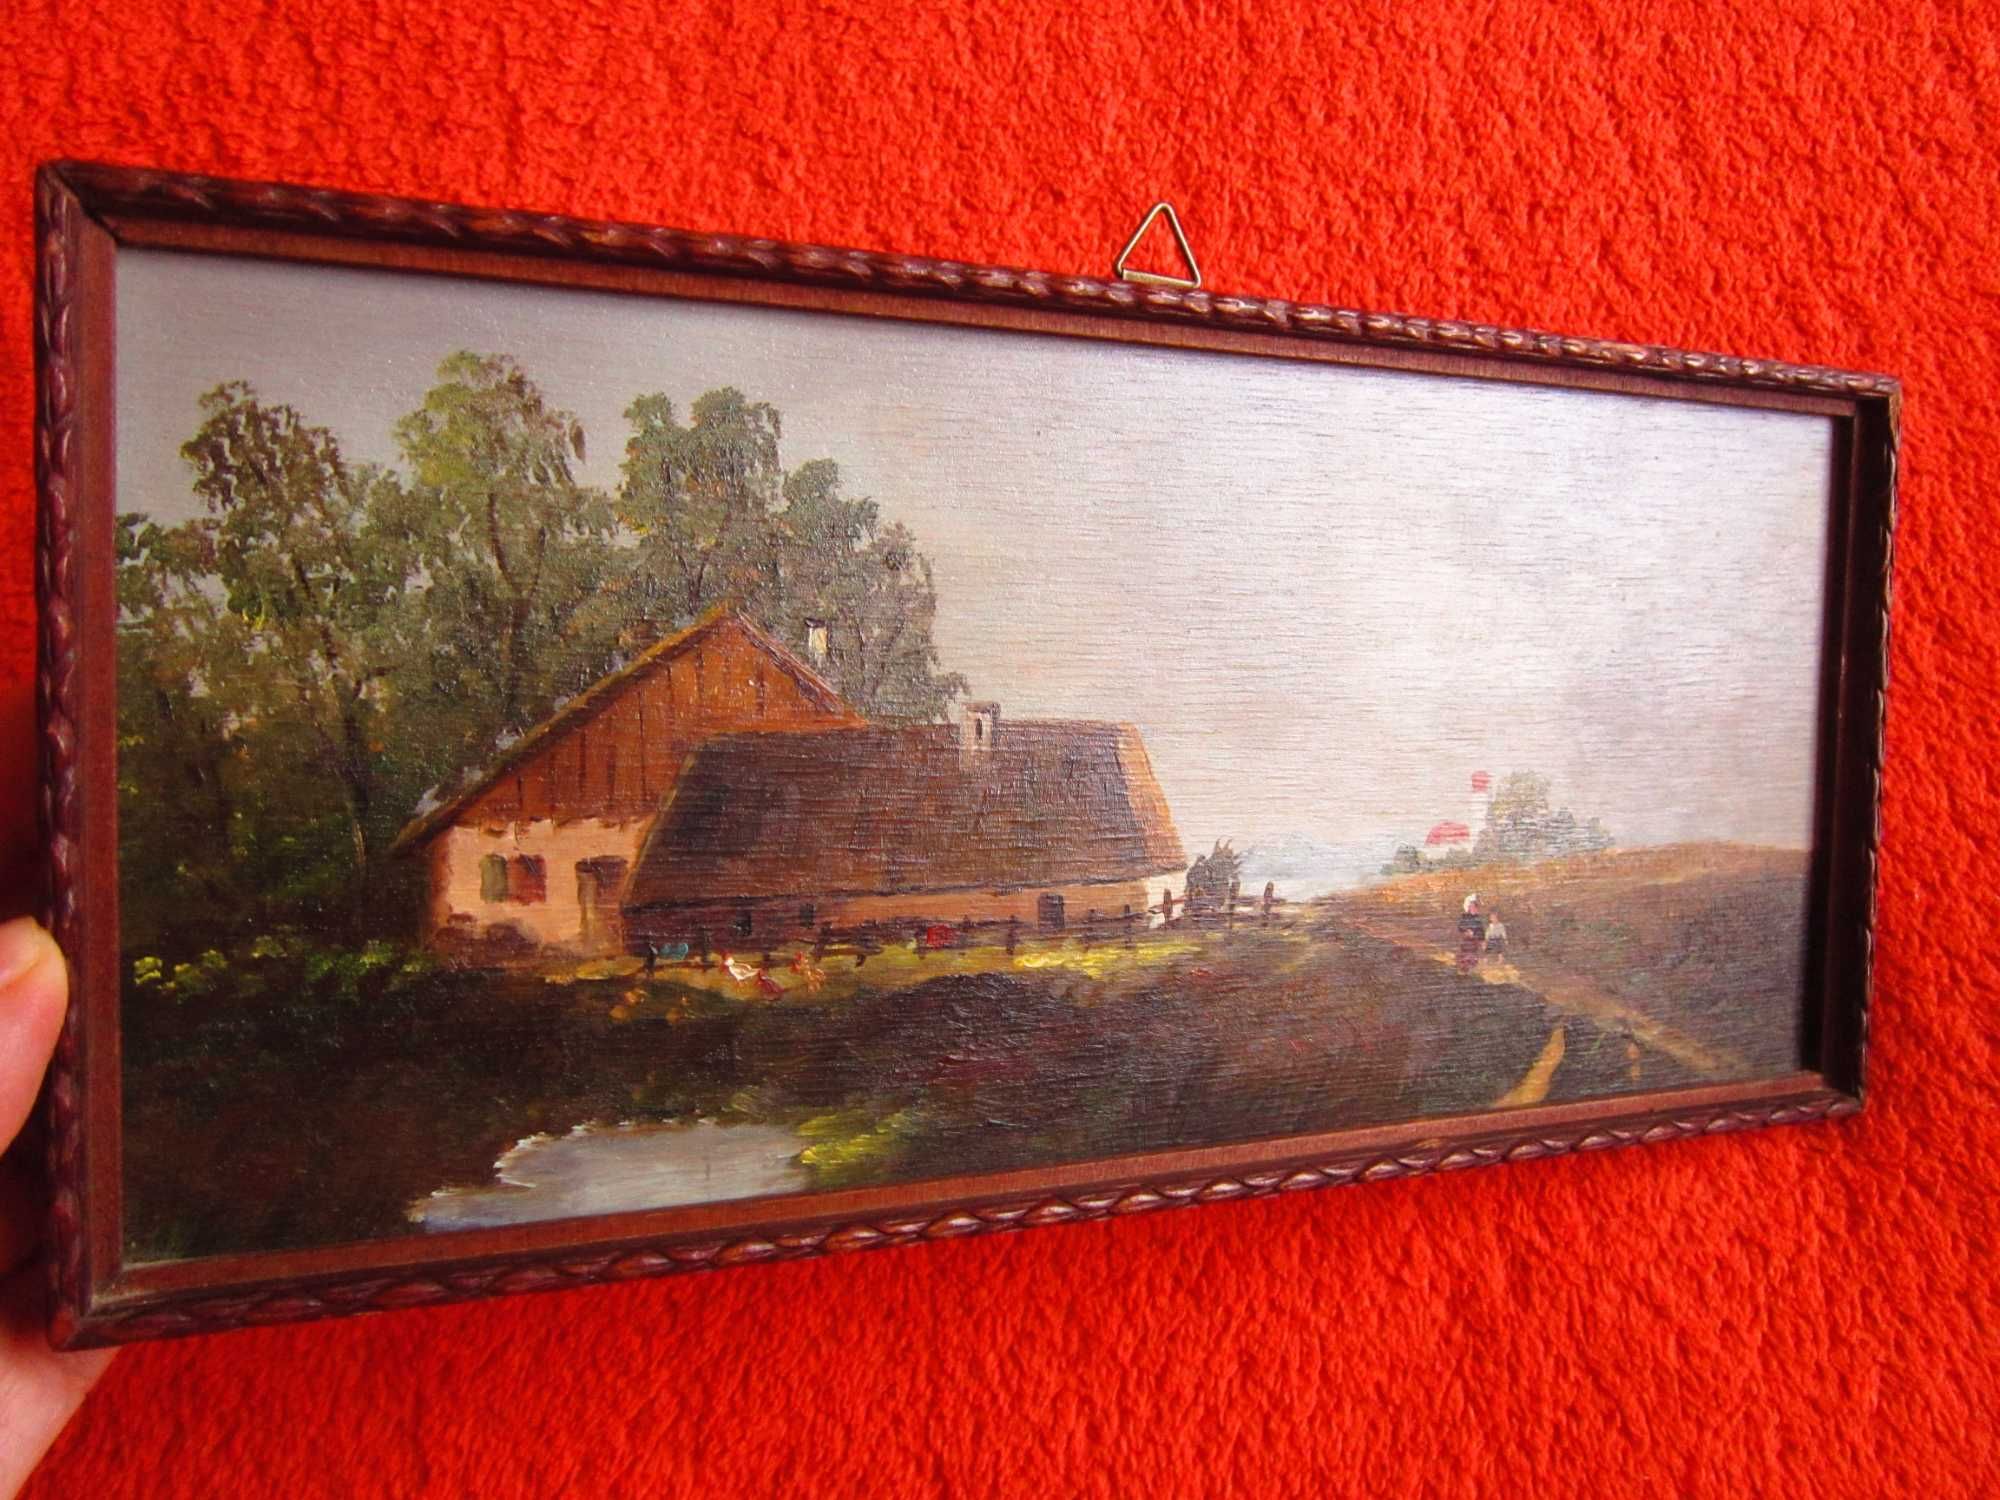 cadou rar tablou mic pictură în ulei scenă rurală Danemarca anii'50